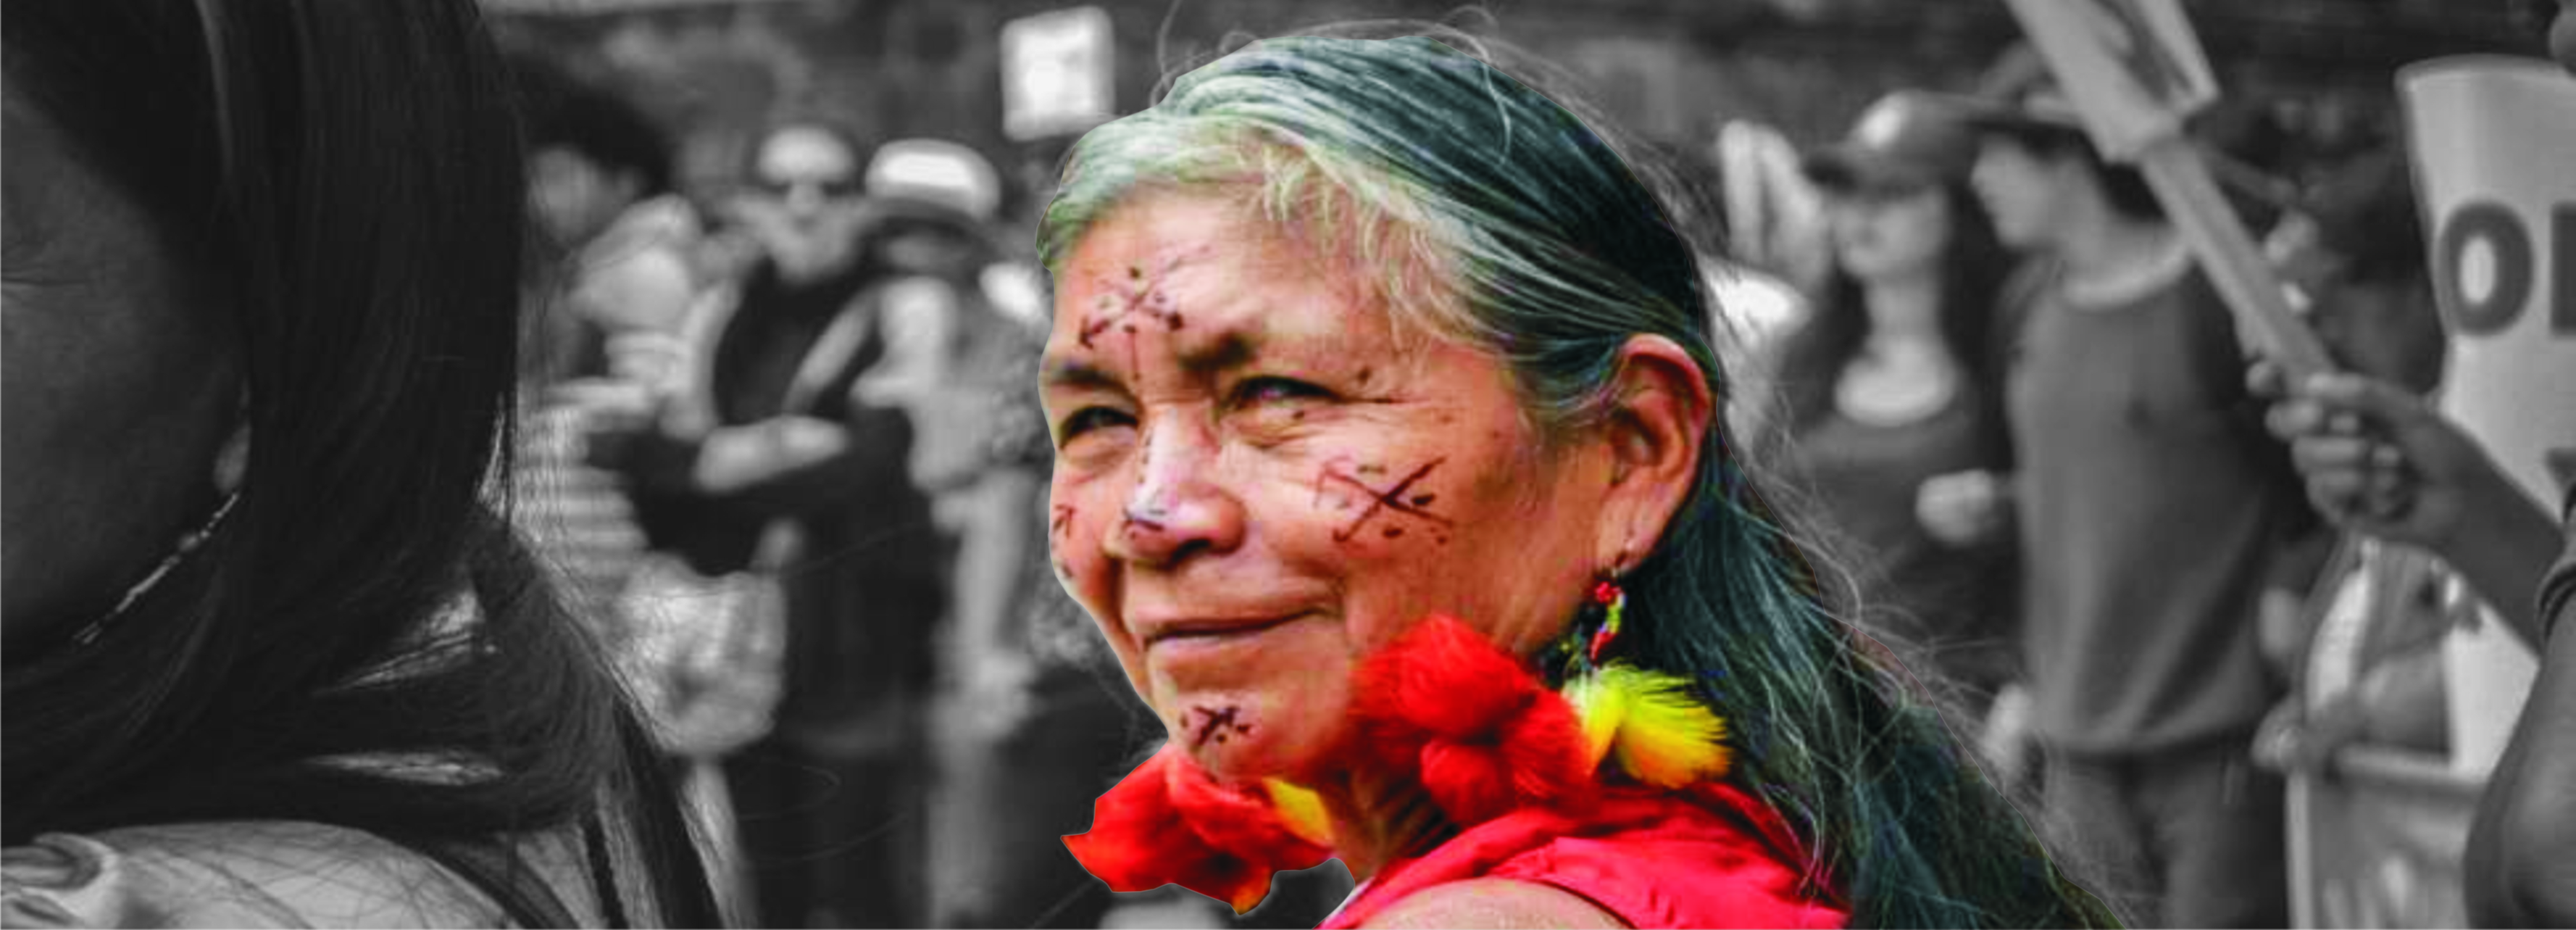 Incansables, aguerridas y luchadoras, así son las mujeres amazónicas, siempre con sus hijos o nietos en brazos vienen peleando hace décadas en la selva, en medio del inmenso mar verde que es su casa.